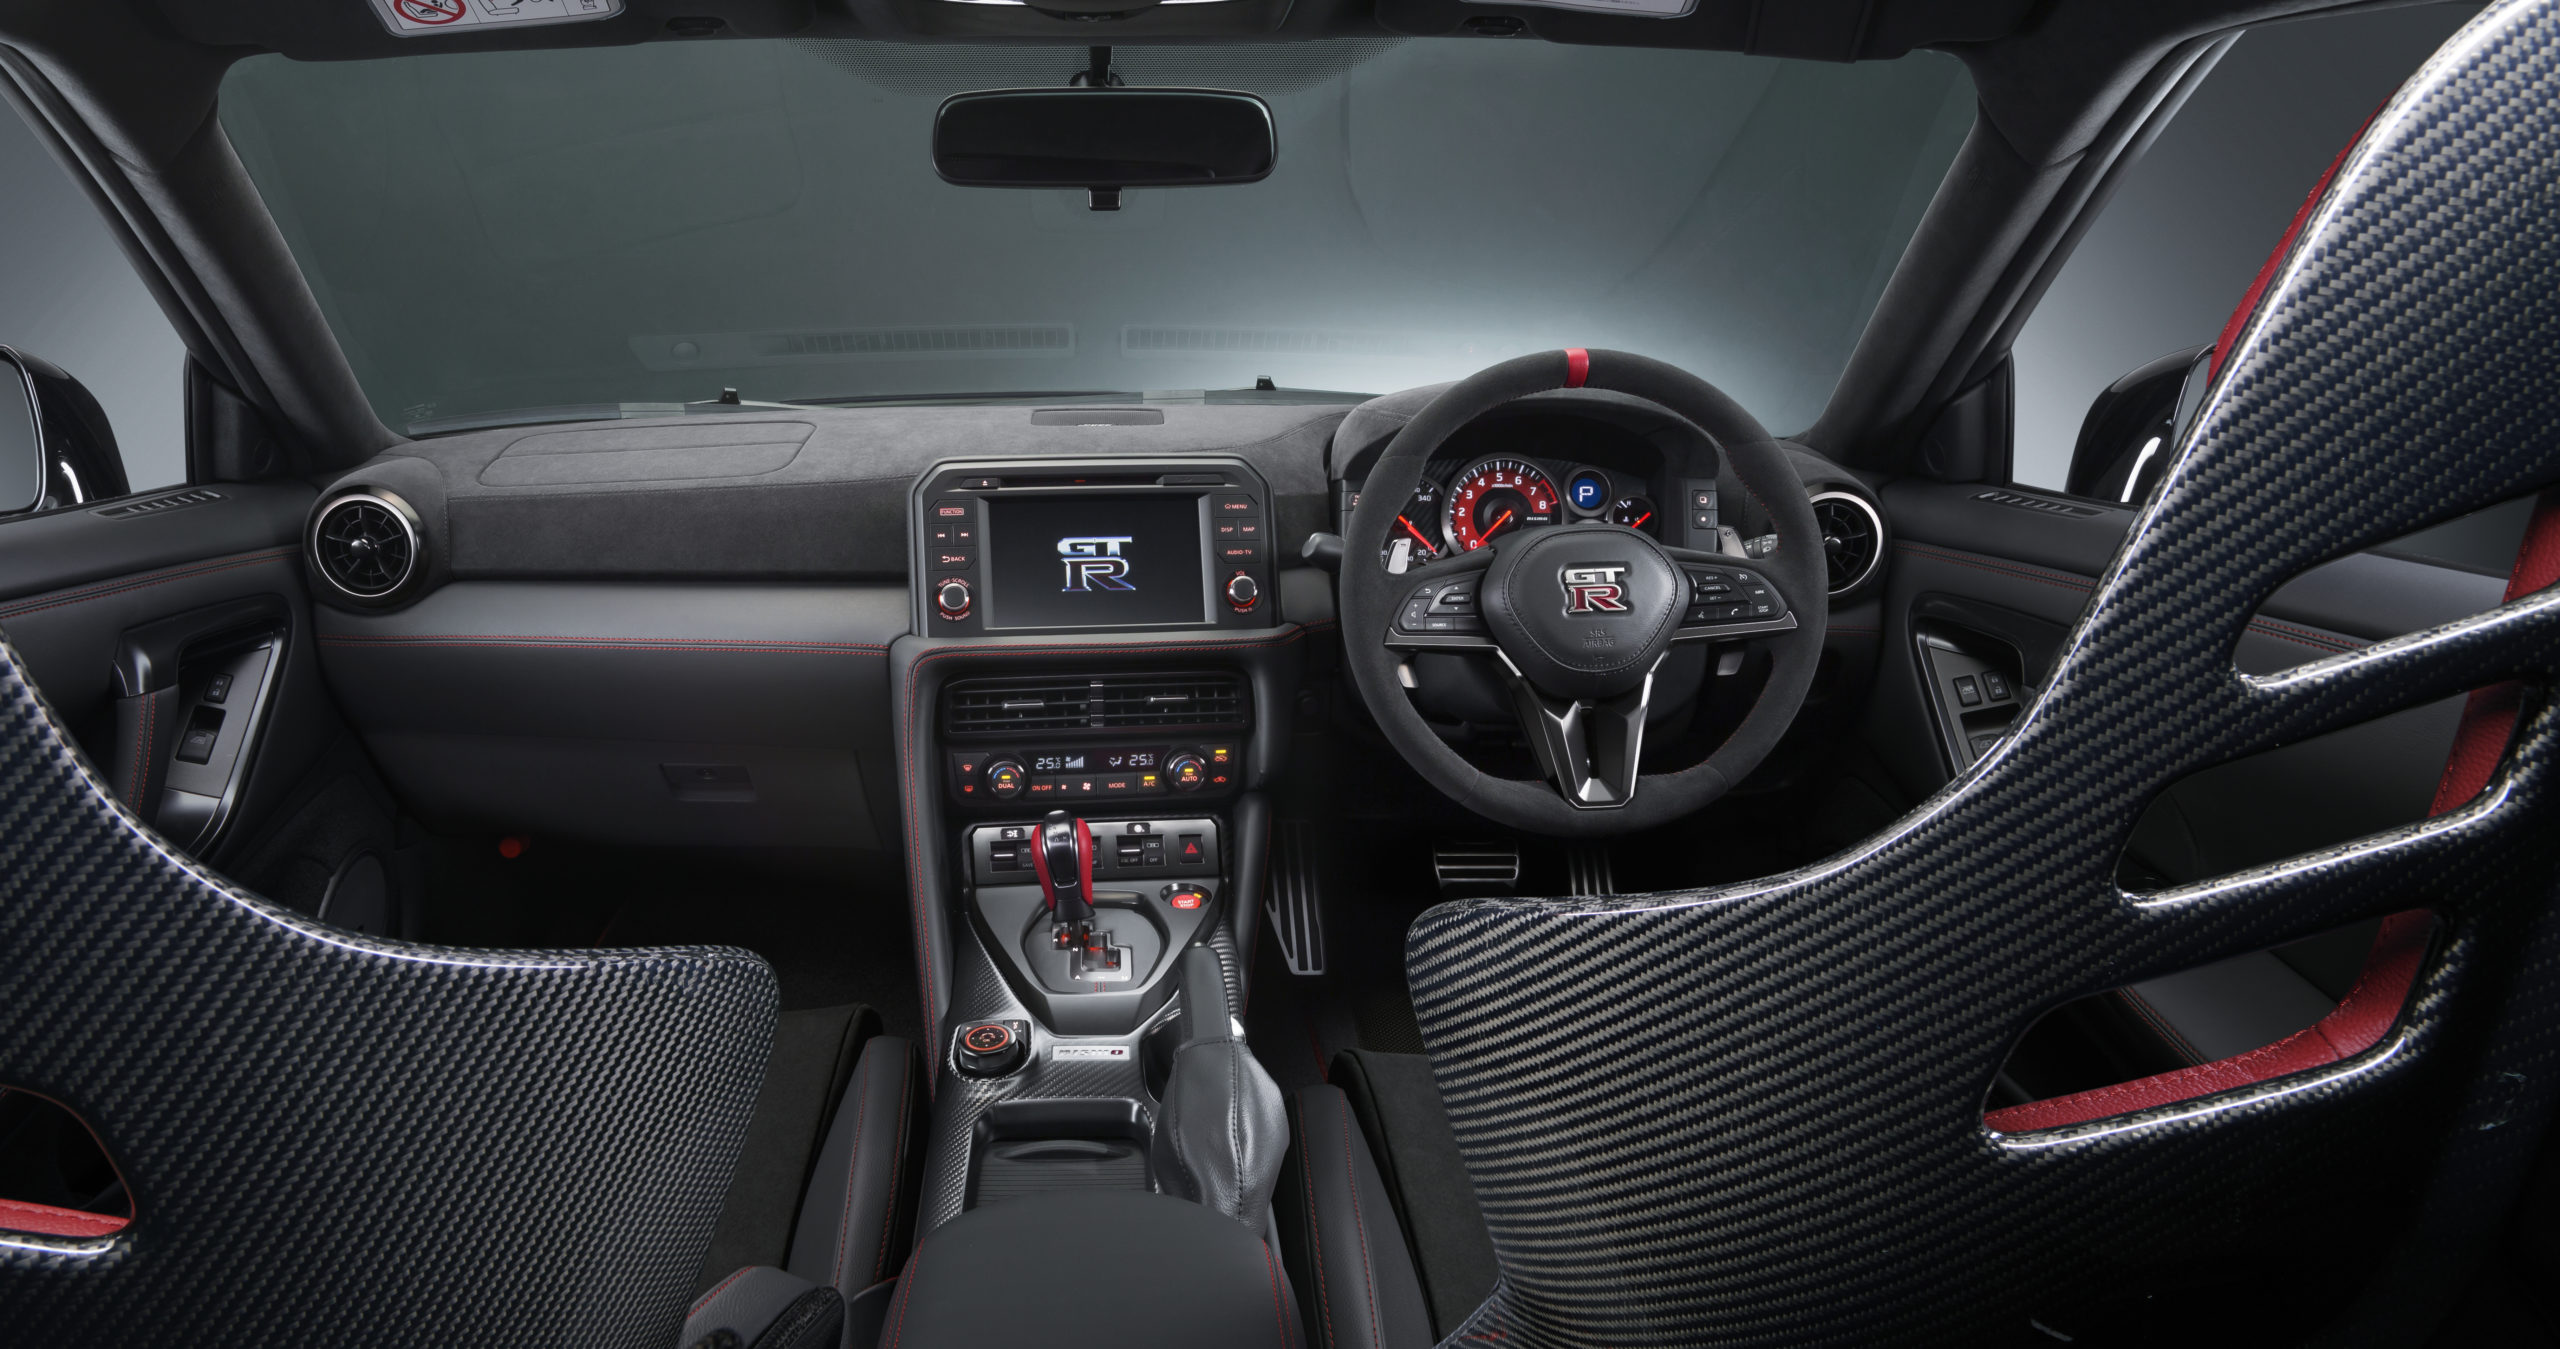 Novo Nissan GT-R será lançado em 2023 com motorização híbrida